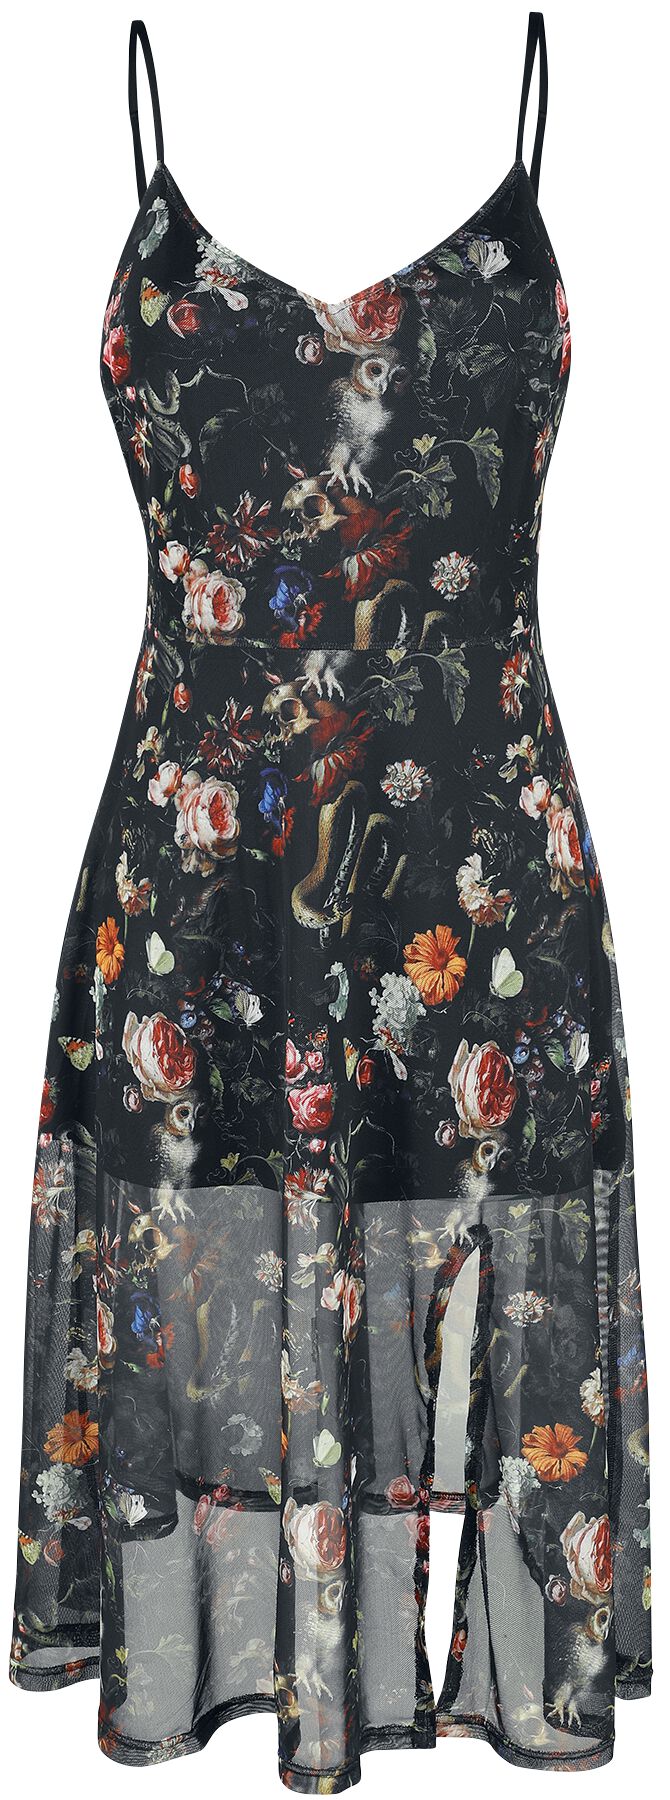 Jawbreaker - Gothic Kleid knielang - Night Garden Print Midi Dress - XS bis 4XL - für Damen - Größe L - multicolor